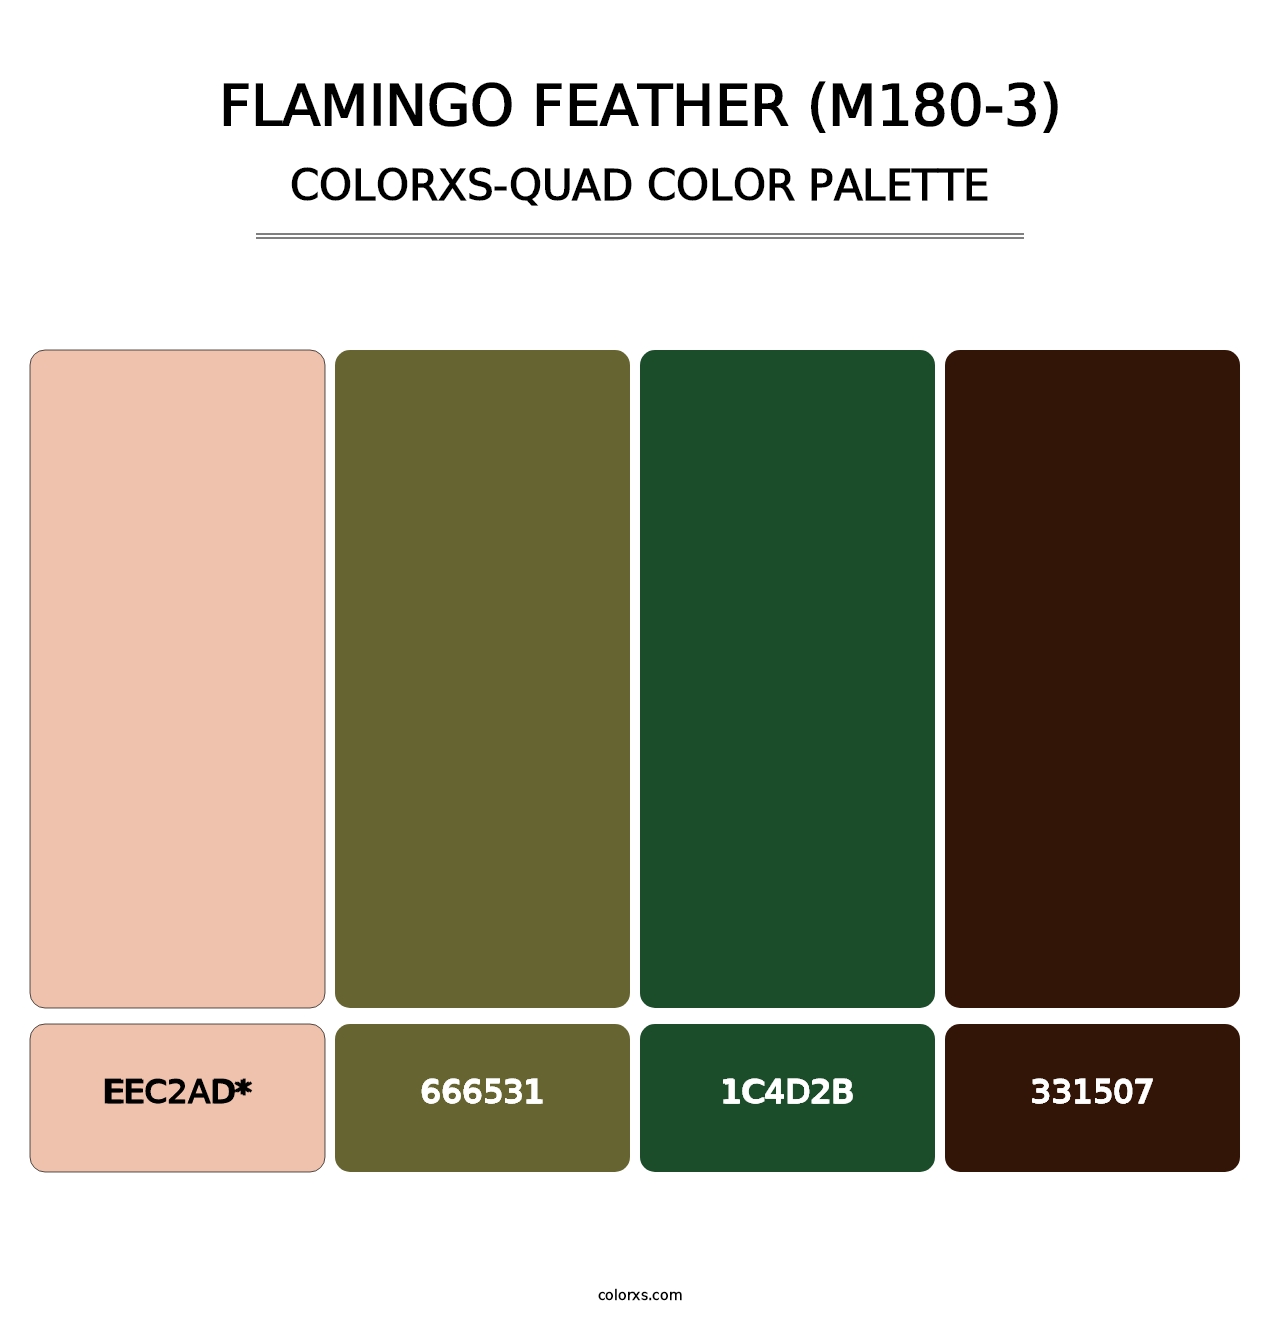 Flamingo Feather (M180-3) - Colorxs Quad Palette